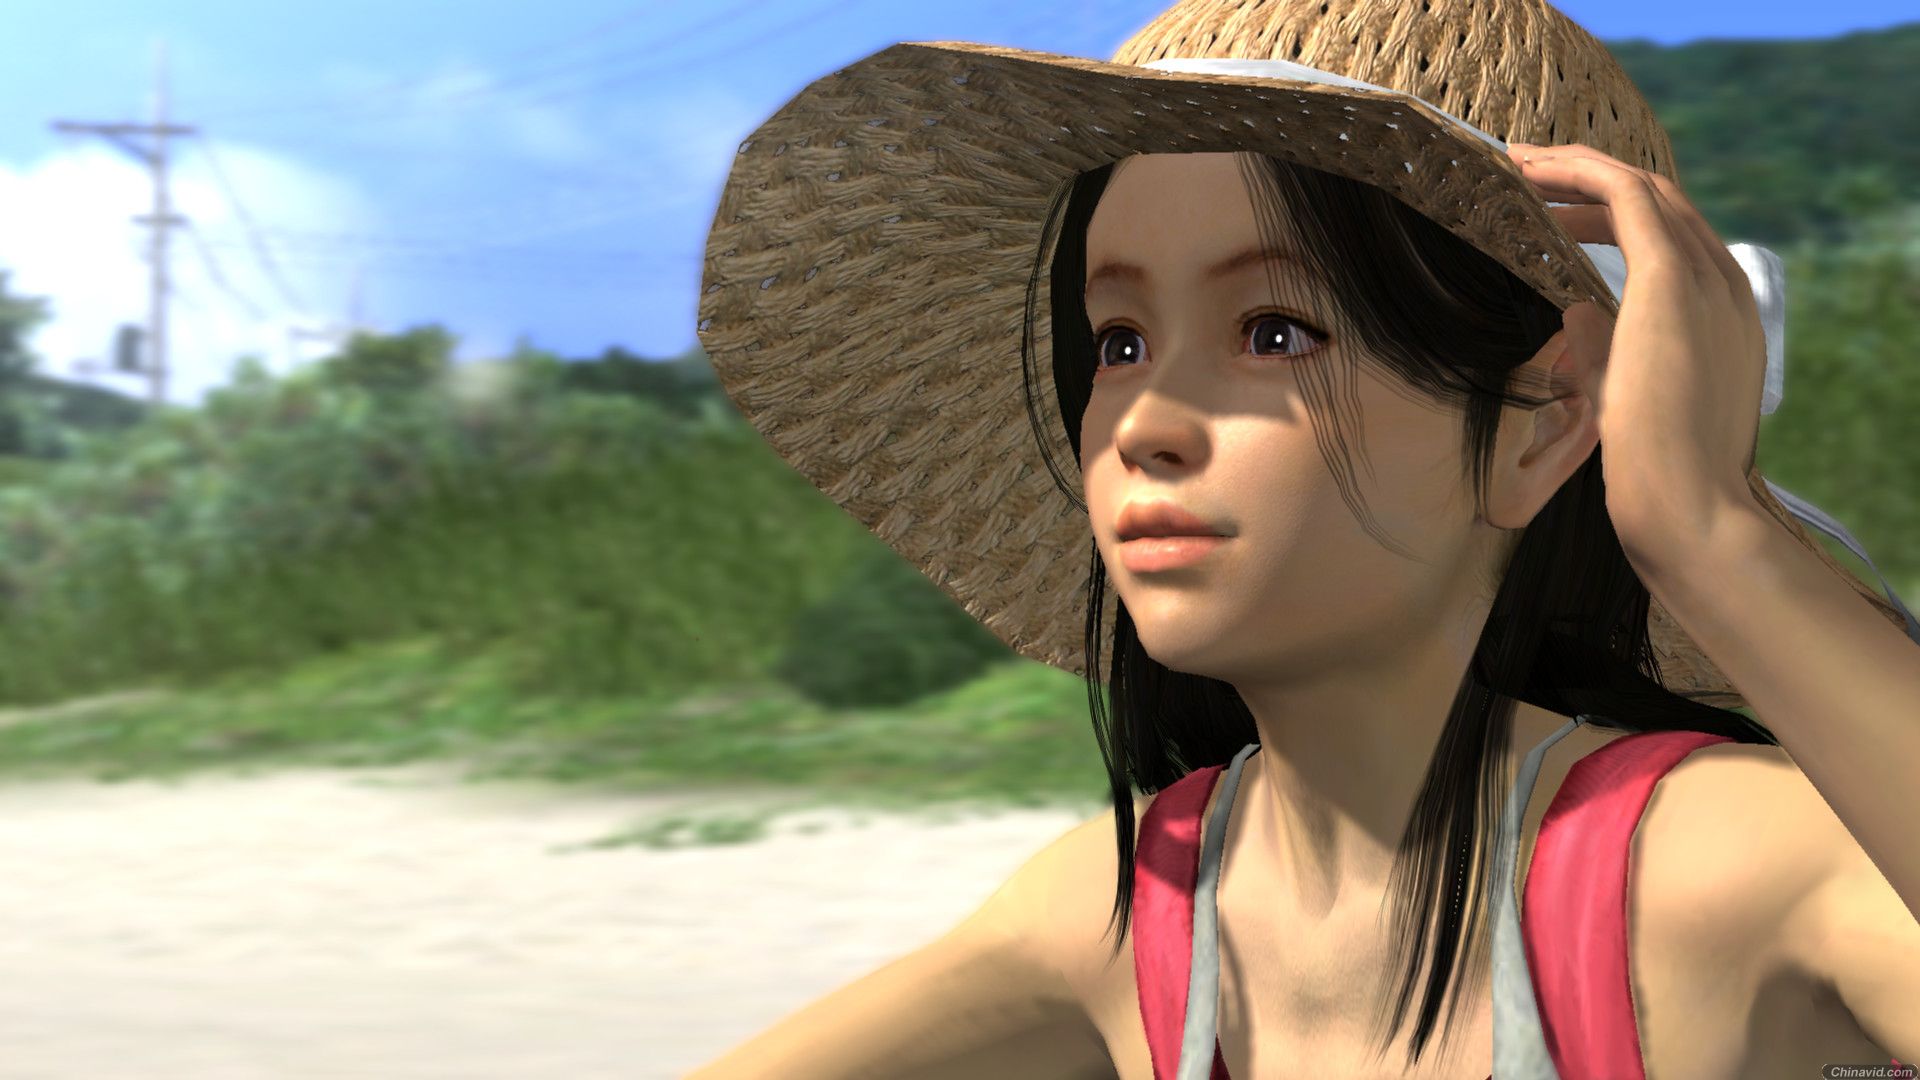 《如龙3》将于09年春季发售 截图抢看